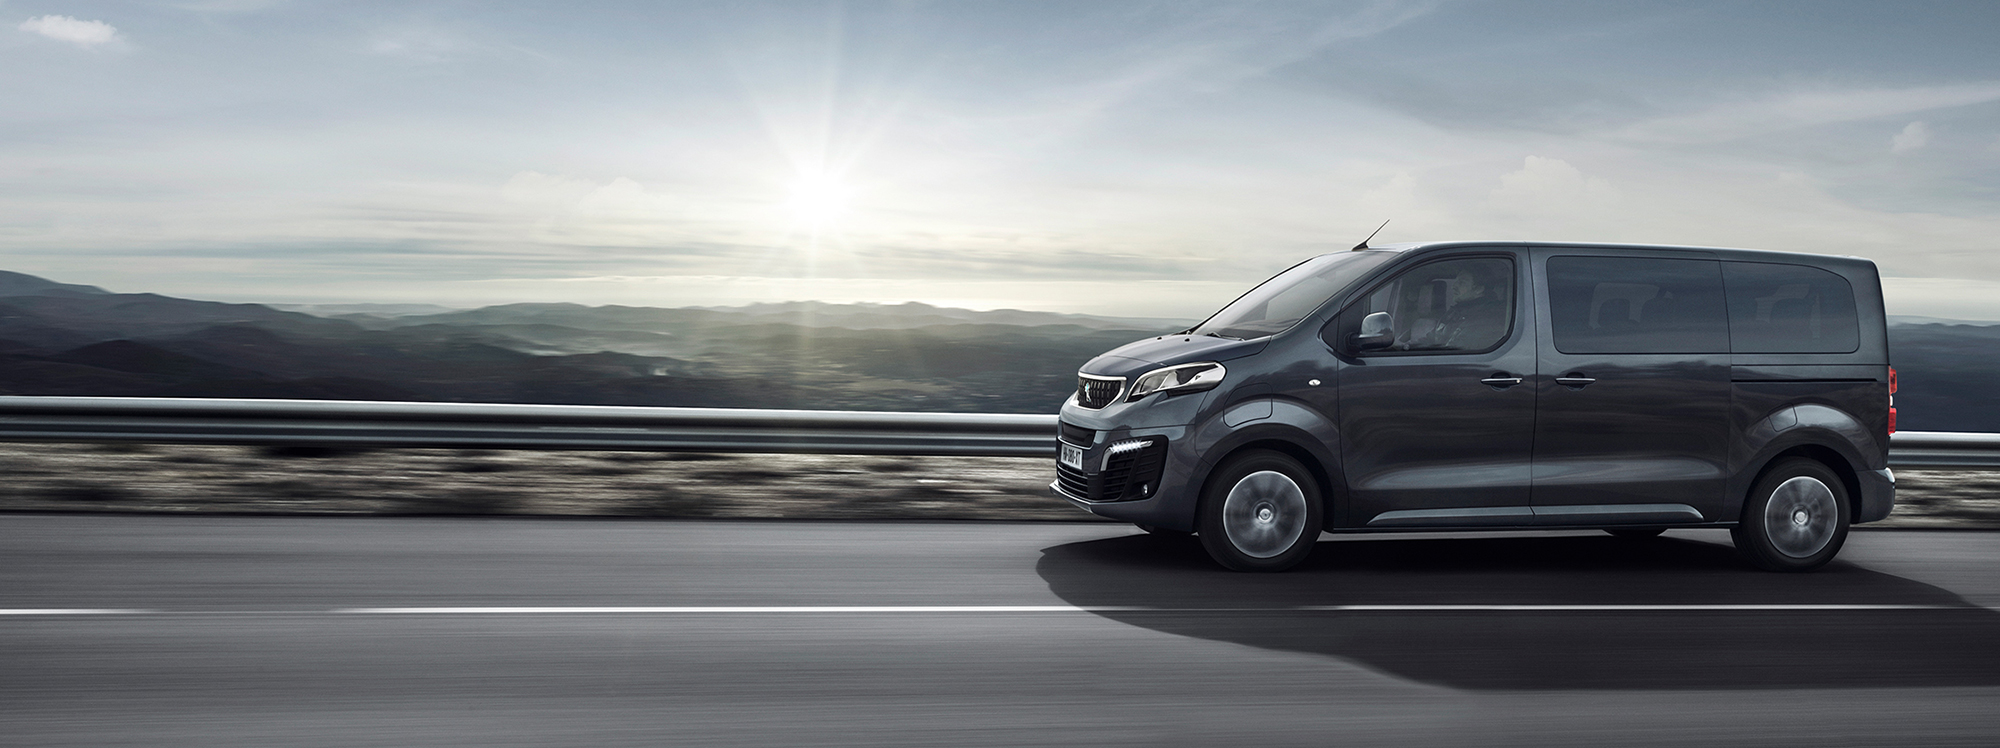 Peugeot presenta su gama de furgonetas completamente eléctricas